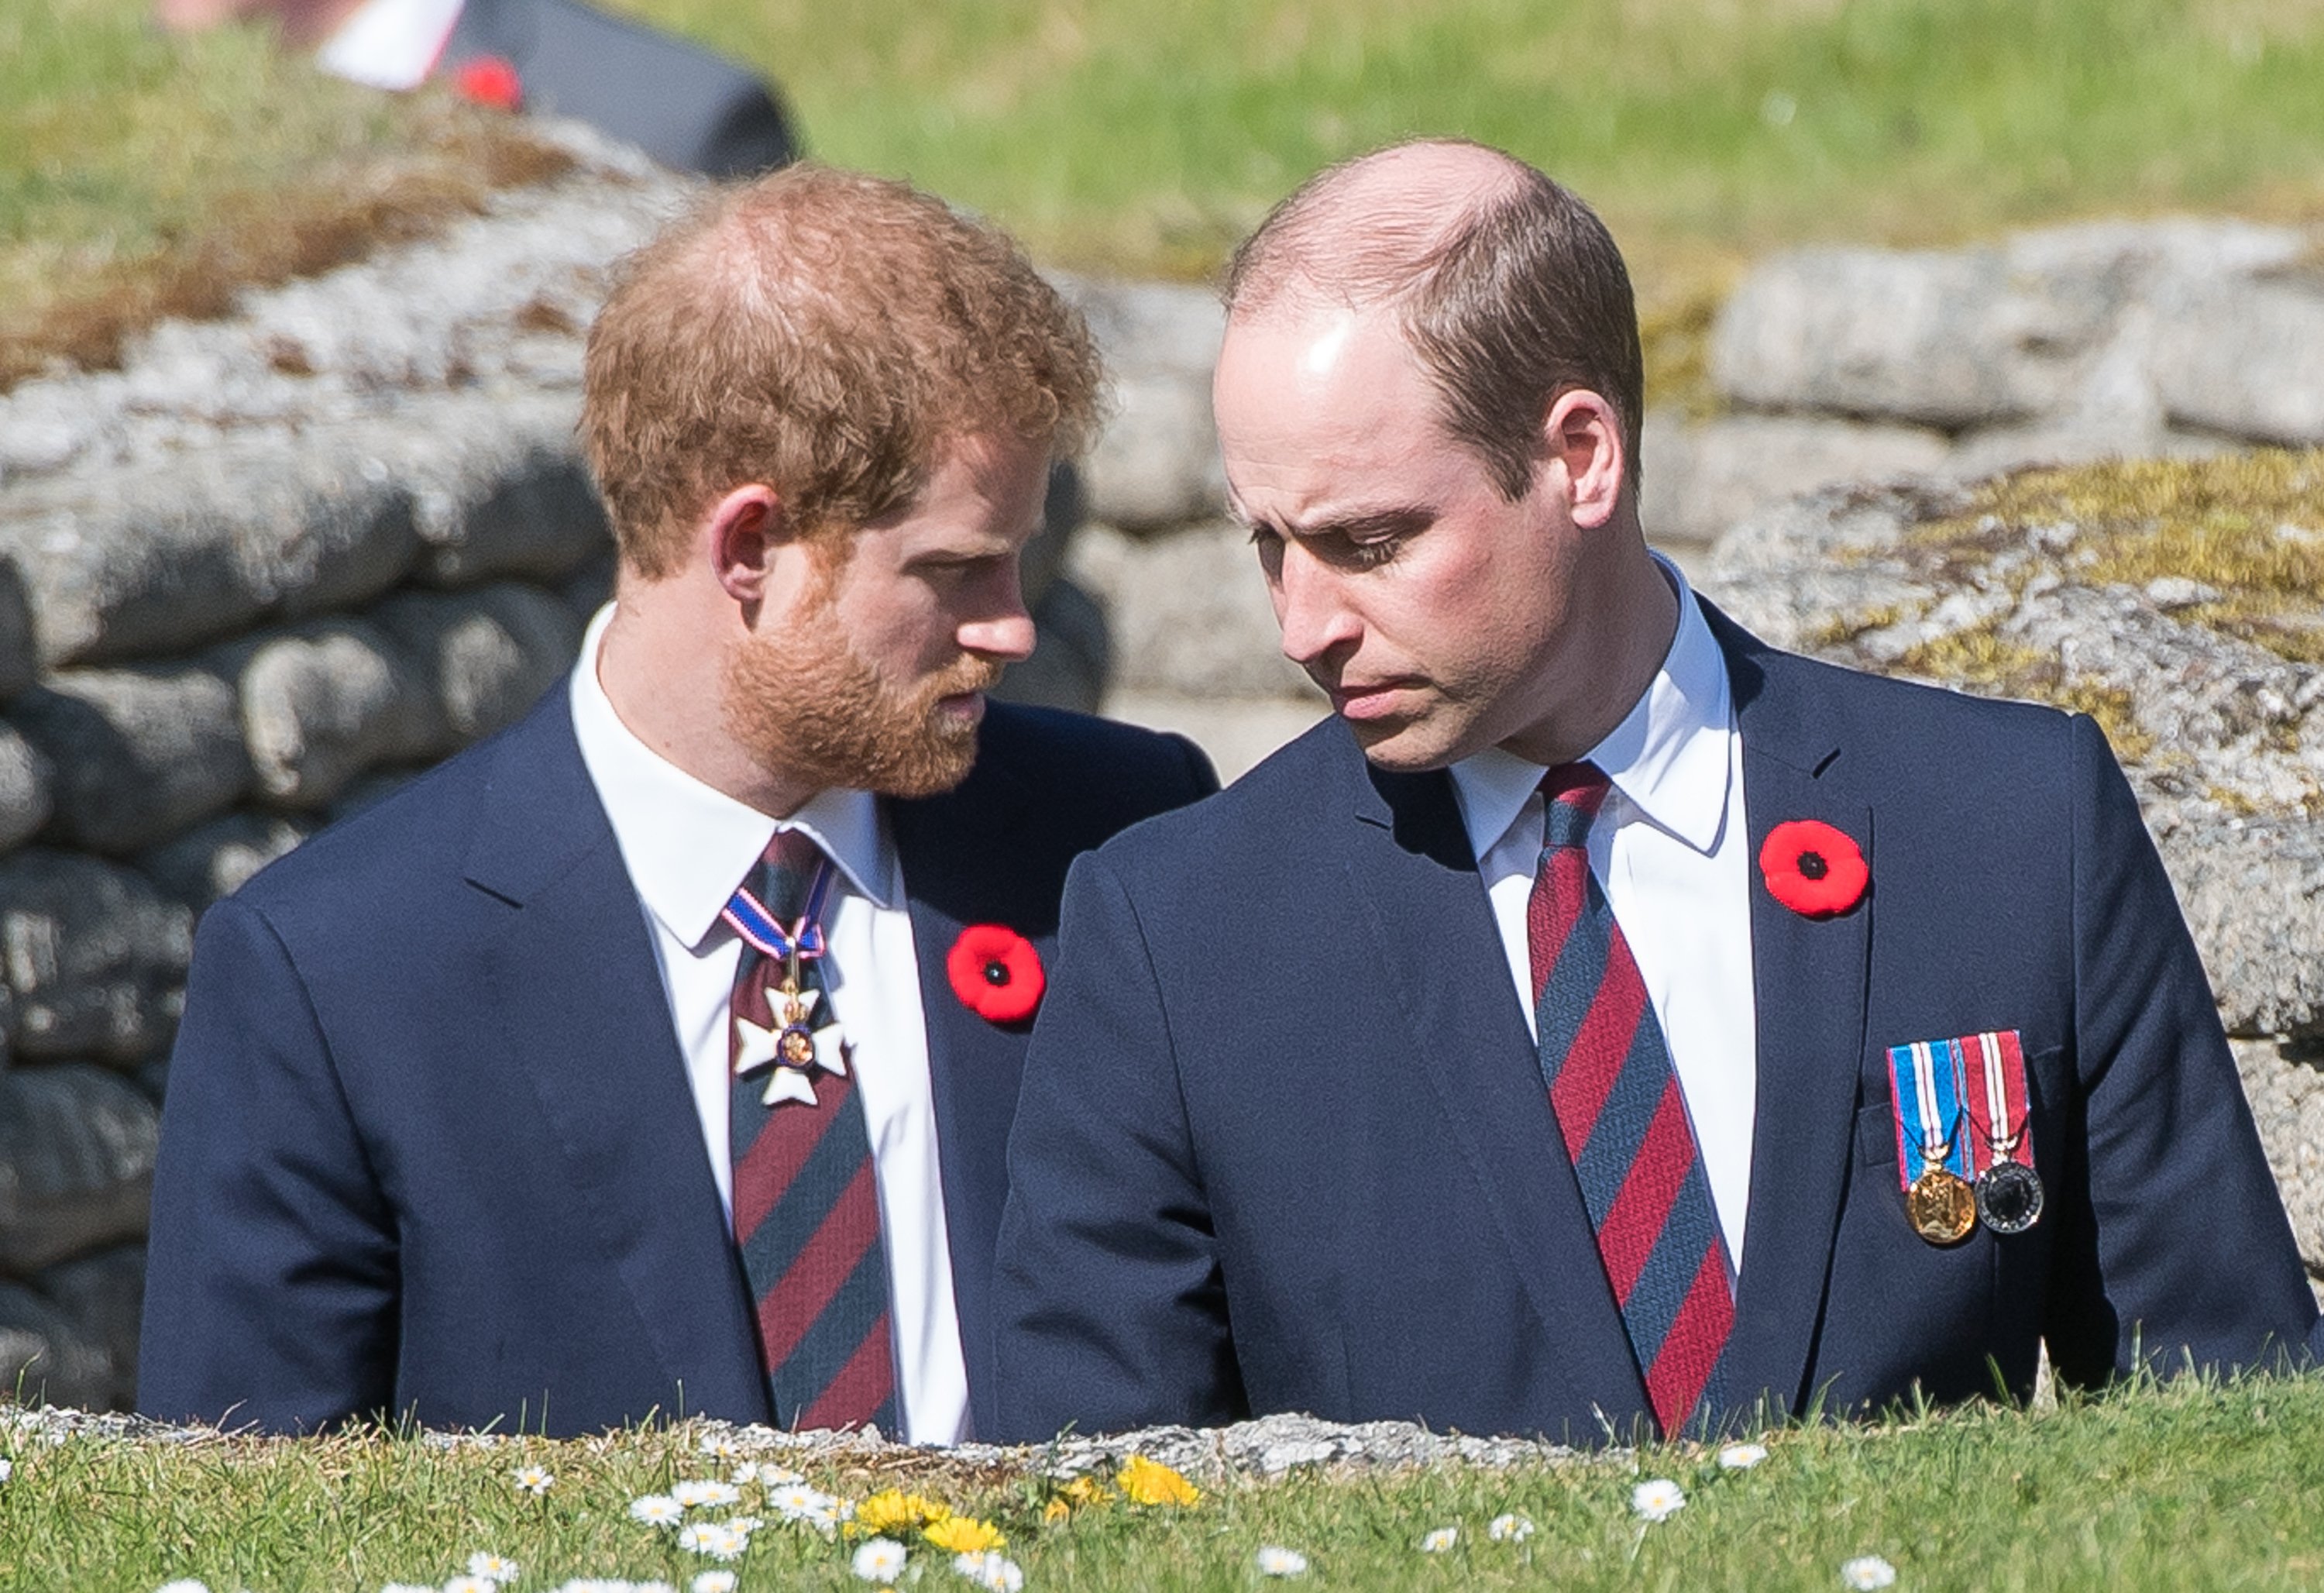 El príncipe William y el príncipe Harry durante las conmemoraciones del centenario de la batalla de Vimy Ridge, el 9 de abril de 2017 en Lille, Francia. | Foto: Getty Images